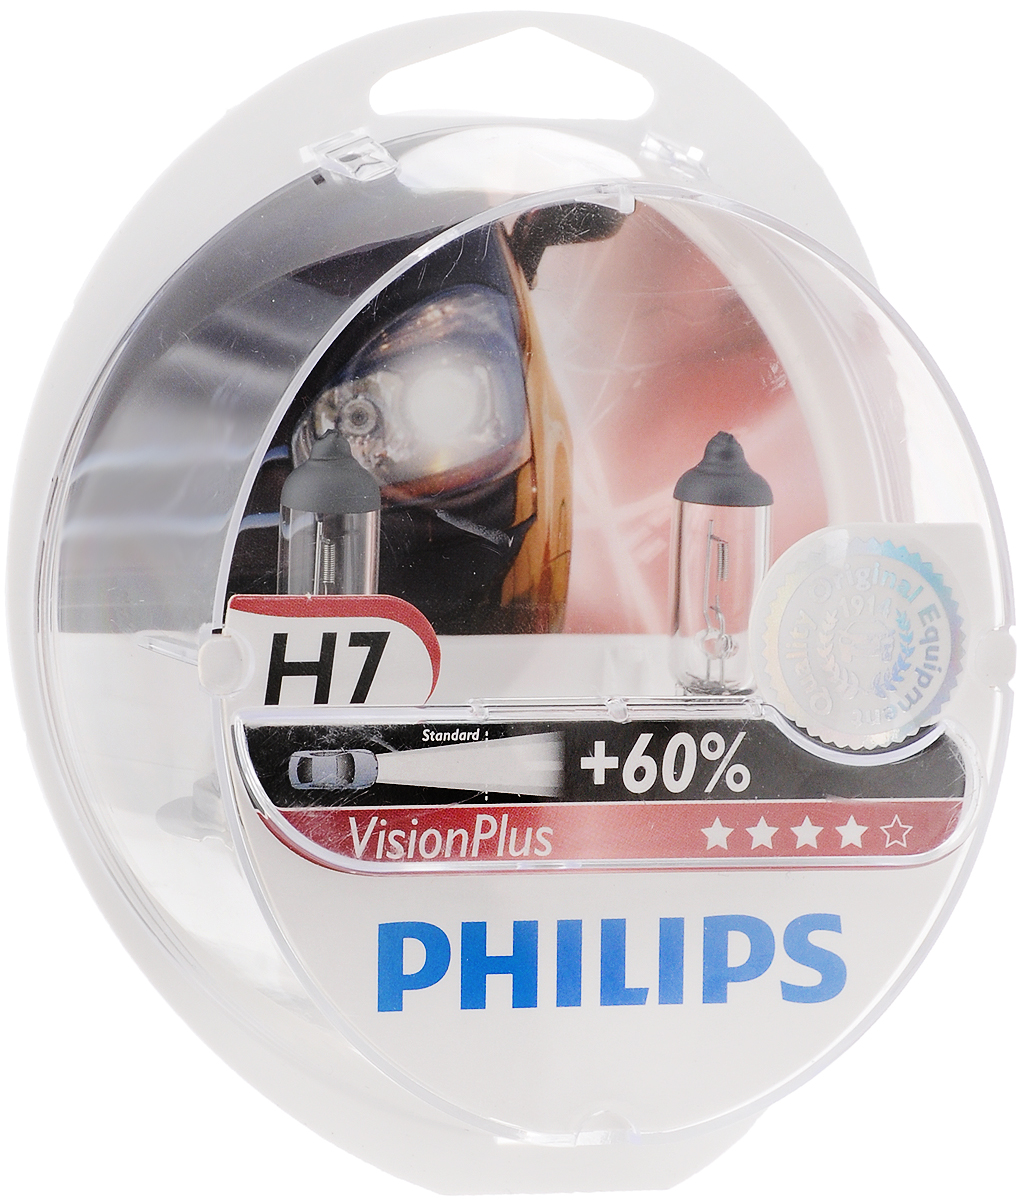 Фара филипс. Philips Vision Plus 12972vps2 h7 55w. Philips h7 Vision Plus +60. Philips Vision Plus px26d. Philips Vision Plus h7 12v 55w +60.